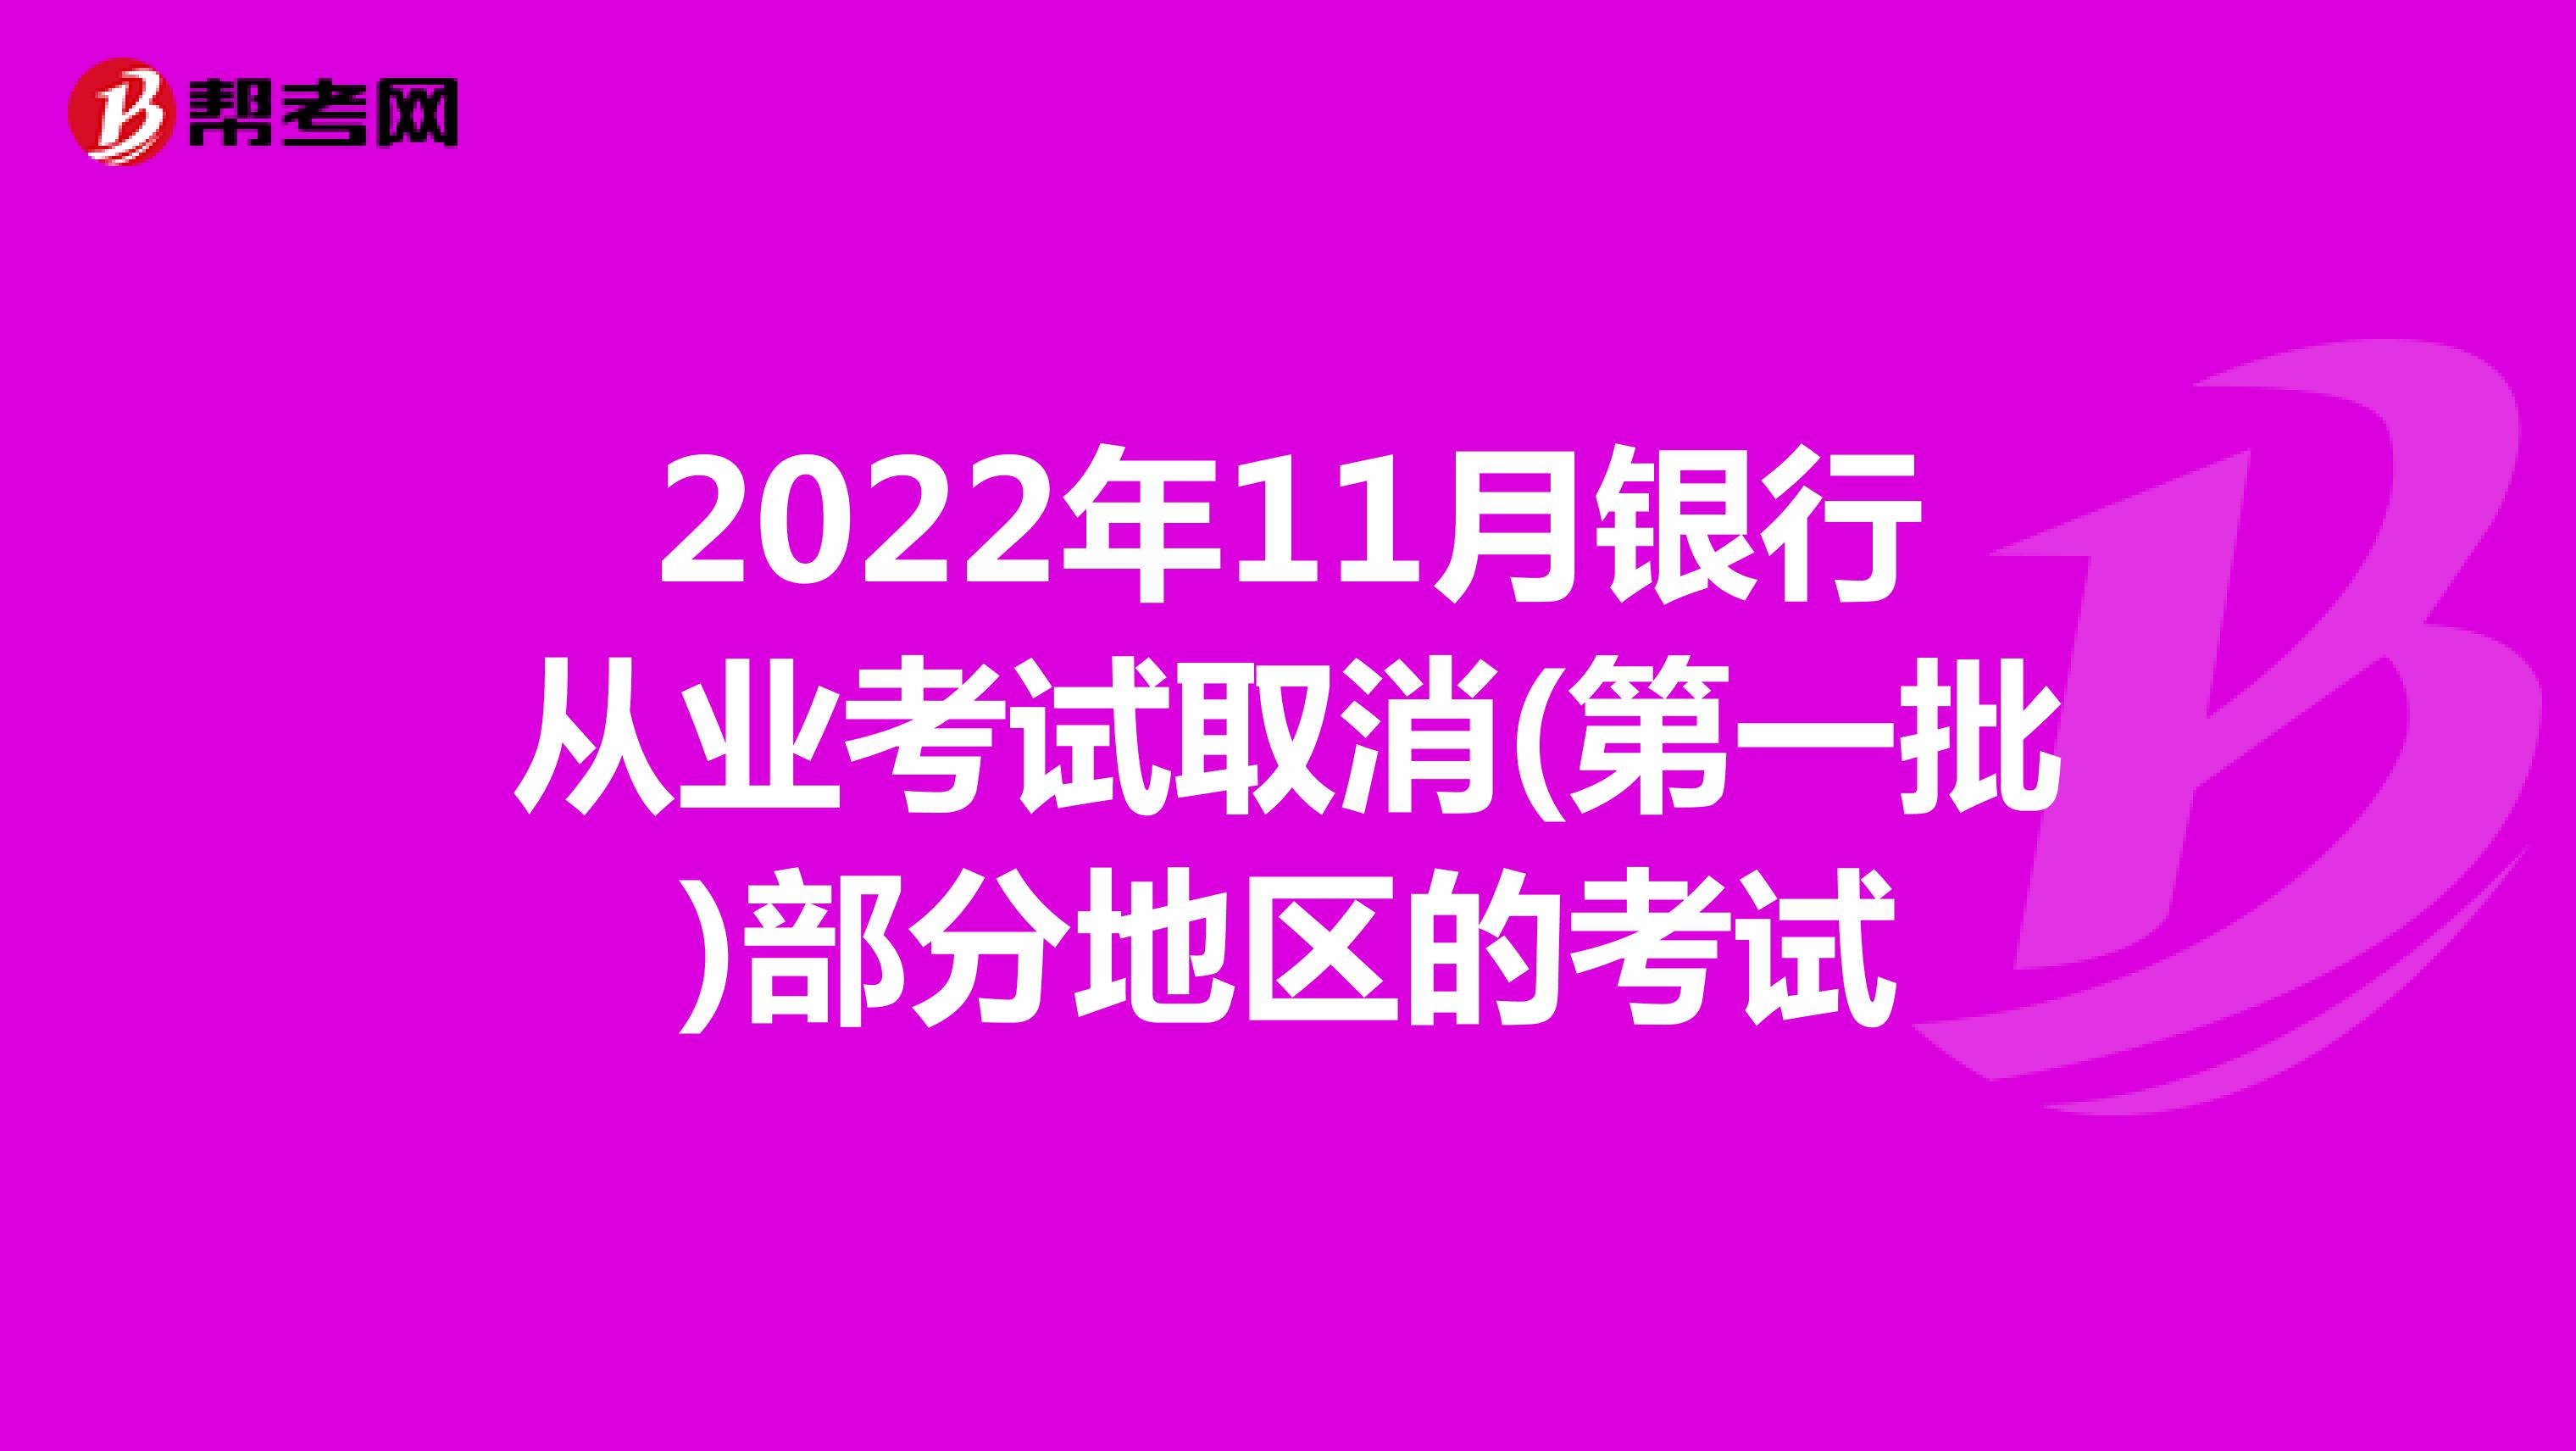 2022年11月银行从业考试取消(第一批)部分地区的考试